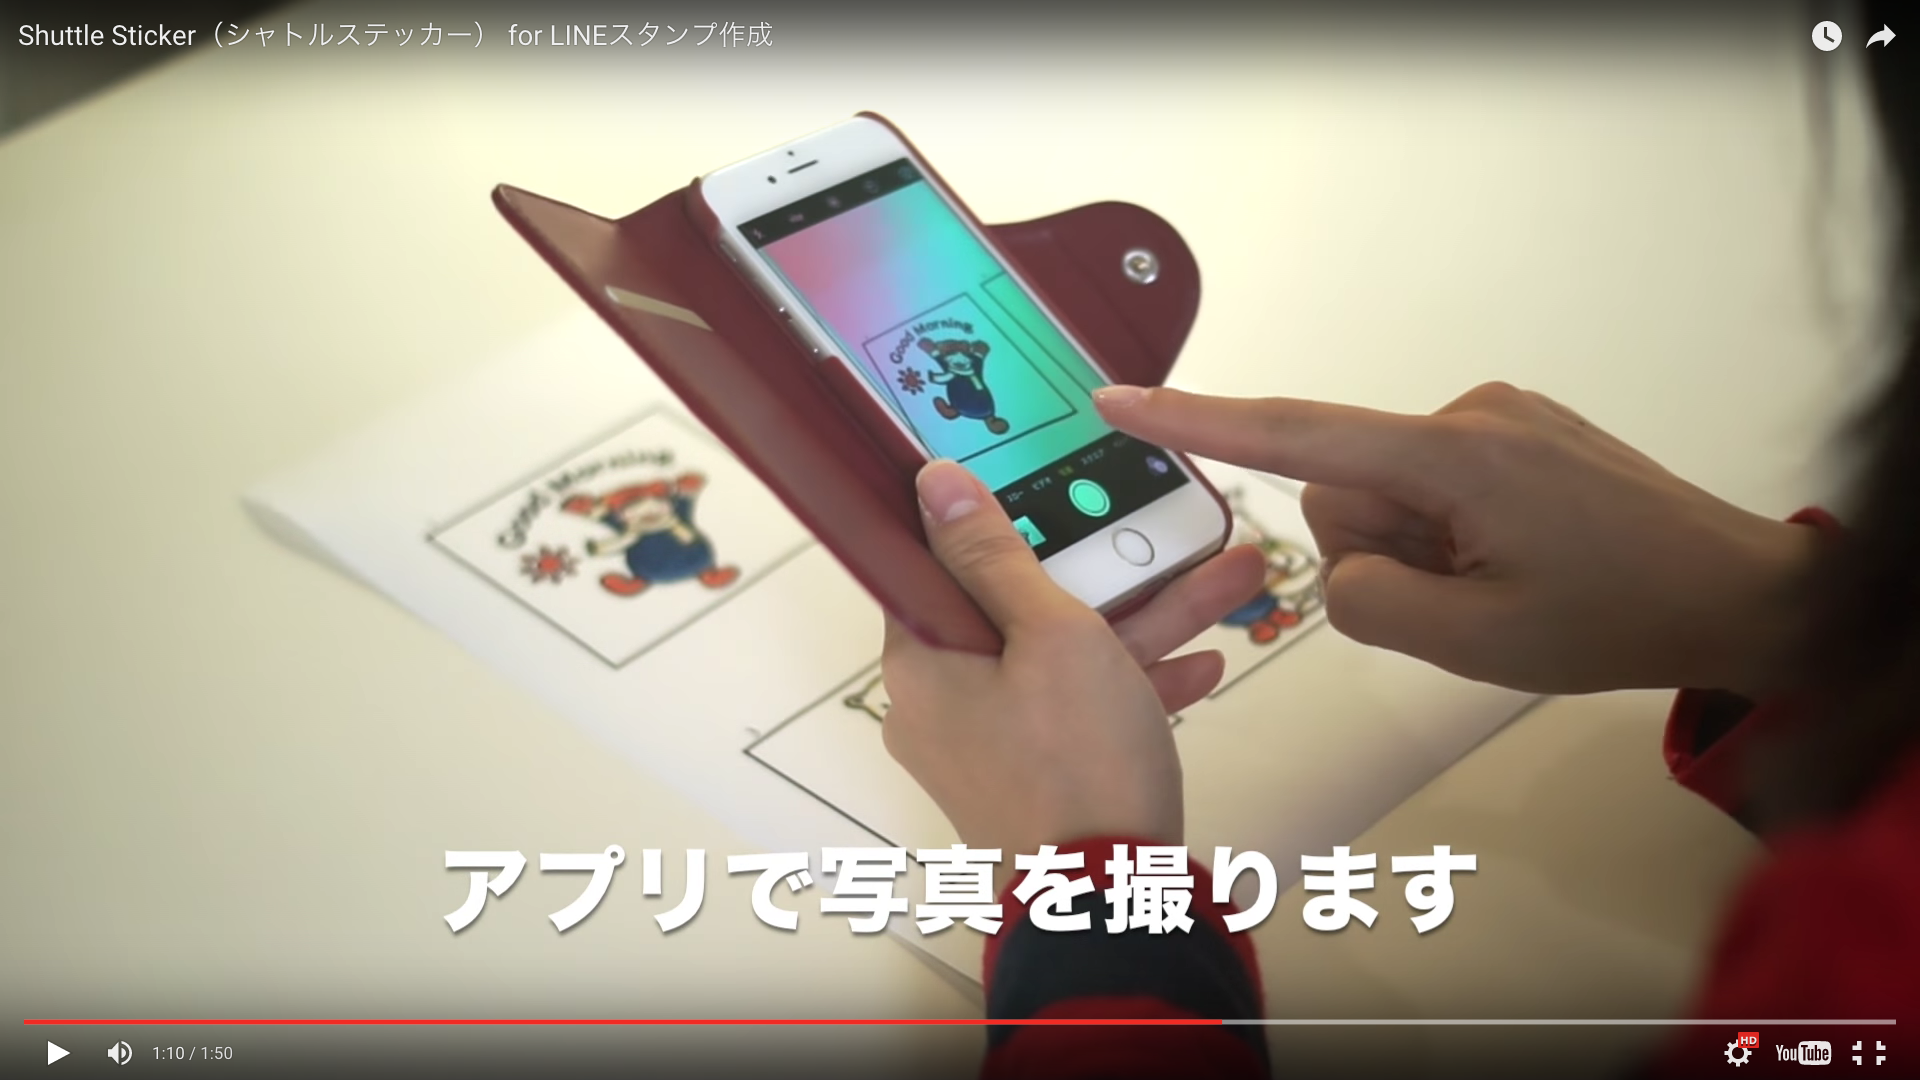 Iphoneと手描きイラストがあればok Lineスタンプが簡単に作れるアプリ Shuttle Sticker シャトルステッカー で自作スタンプに挑戦 Pouch ポーチ